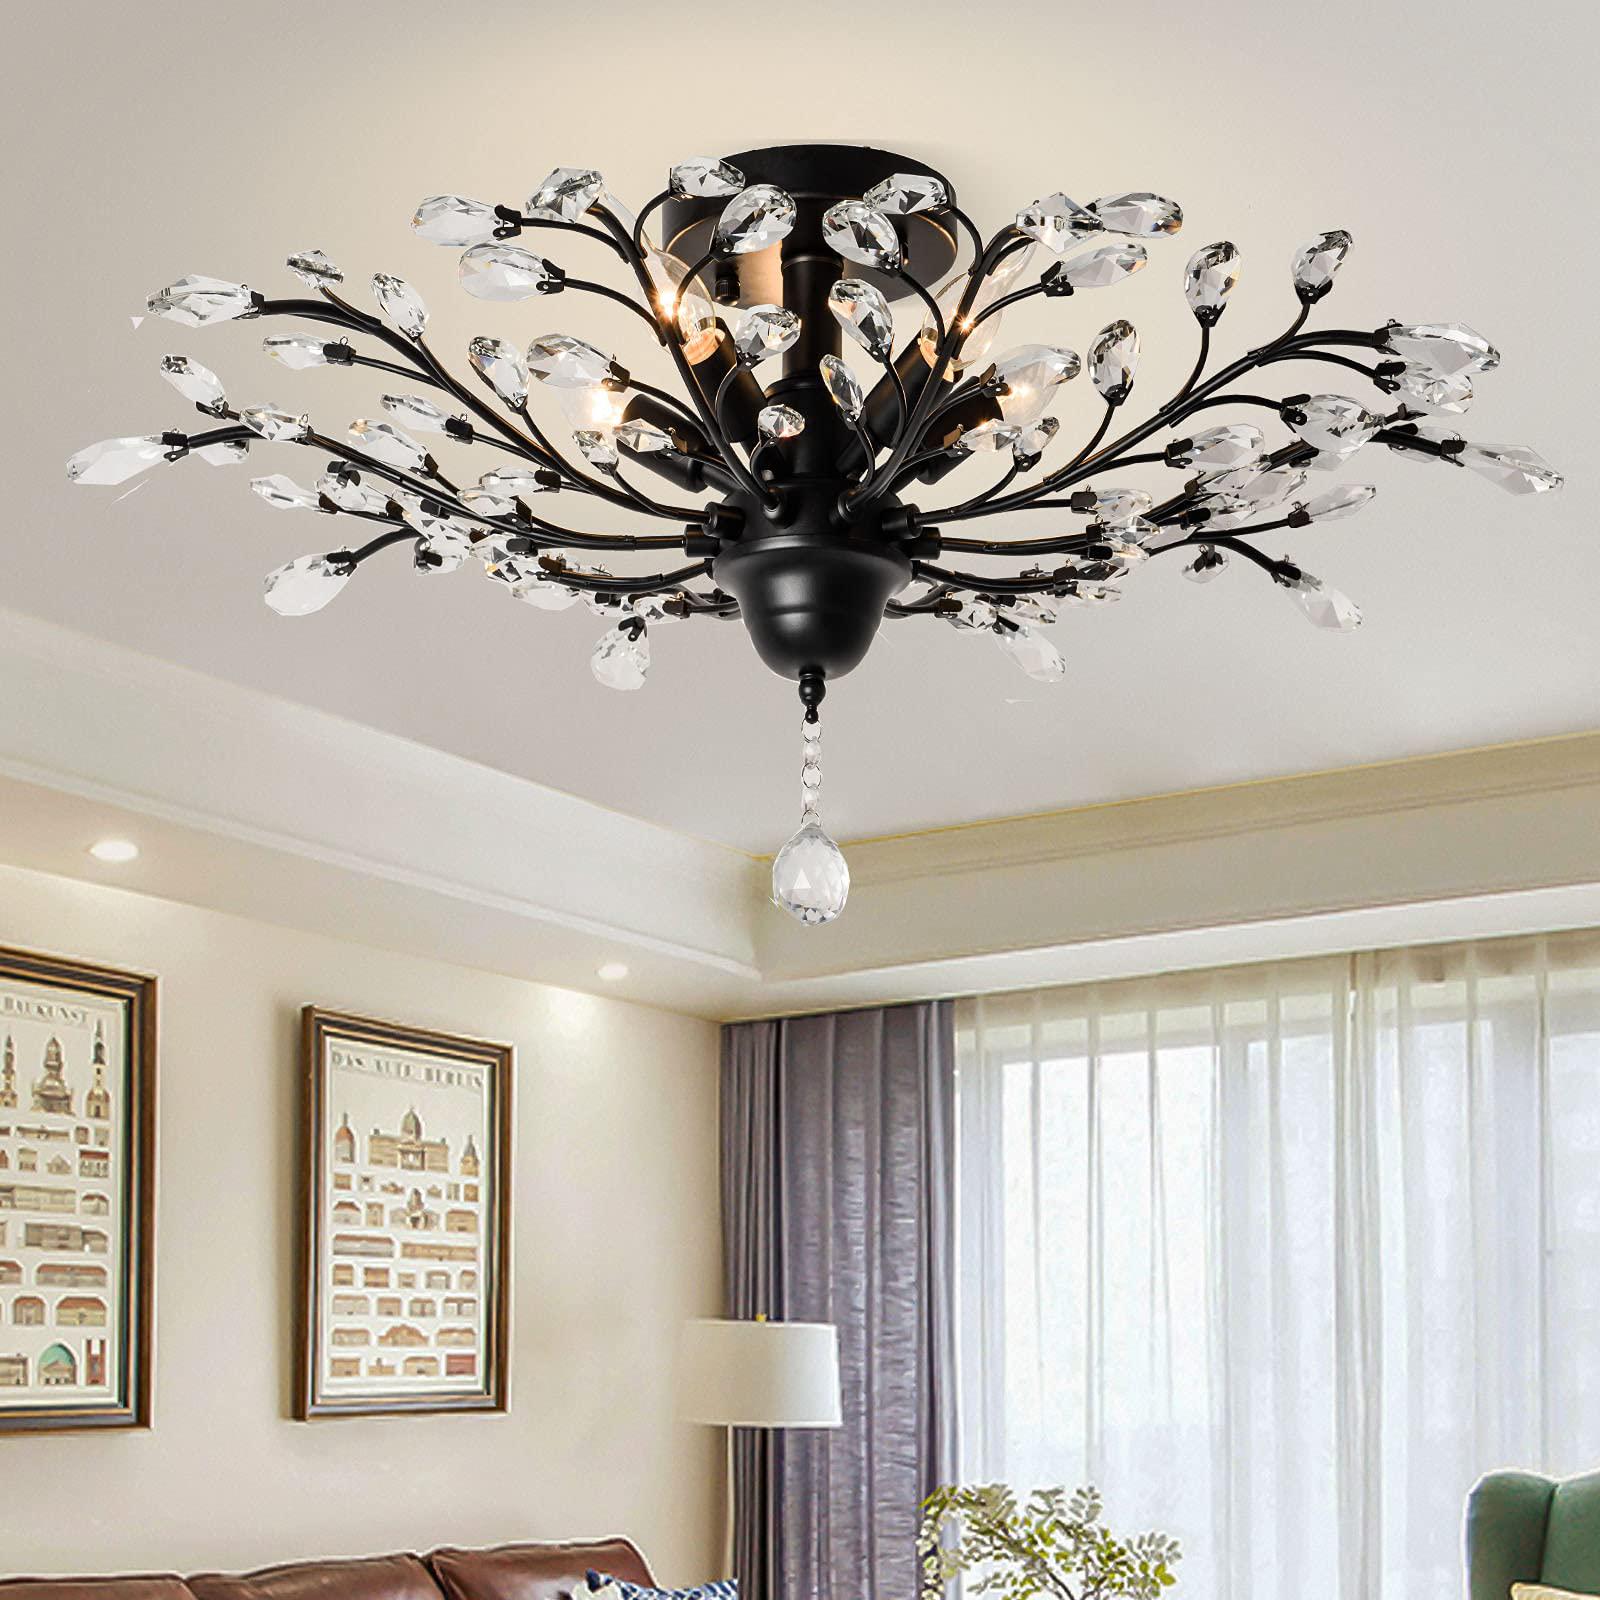 ganeed crystal ceiling light,vintage chandelier, modern elegant k9 crystal glass chandelier flush mount ceiling lighting fixt